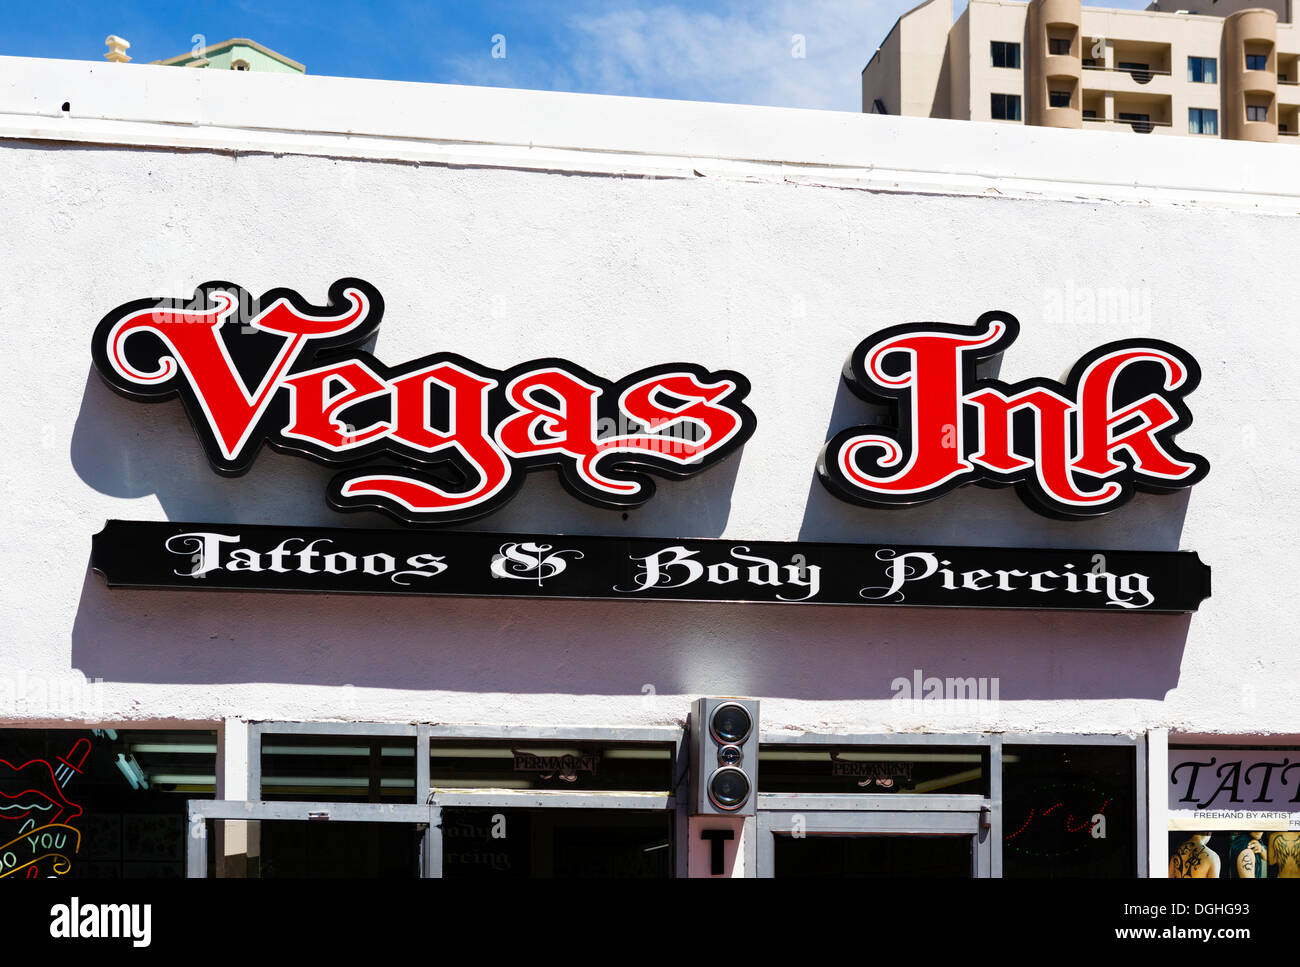 Vegas Ink Tattoo und Body piercing Stube, Las Vegas Boulevard South (The Strip), Las Vegas, Nevada, USA Stockfoto